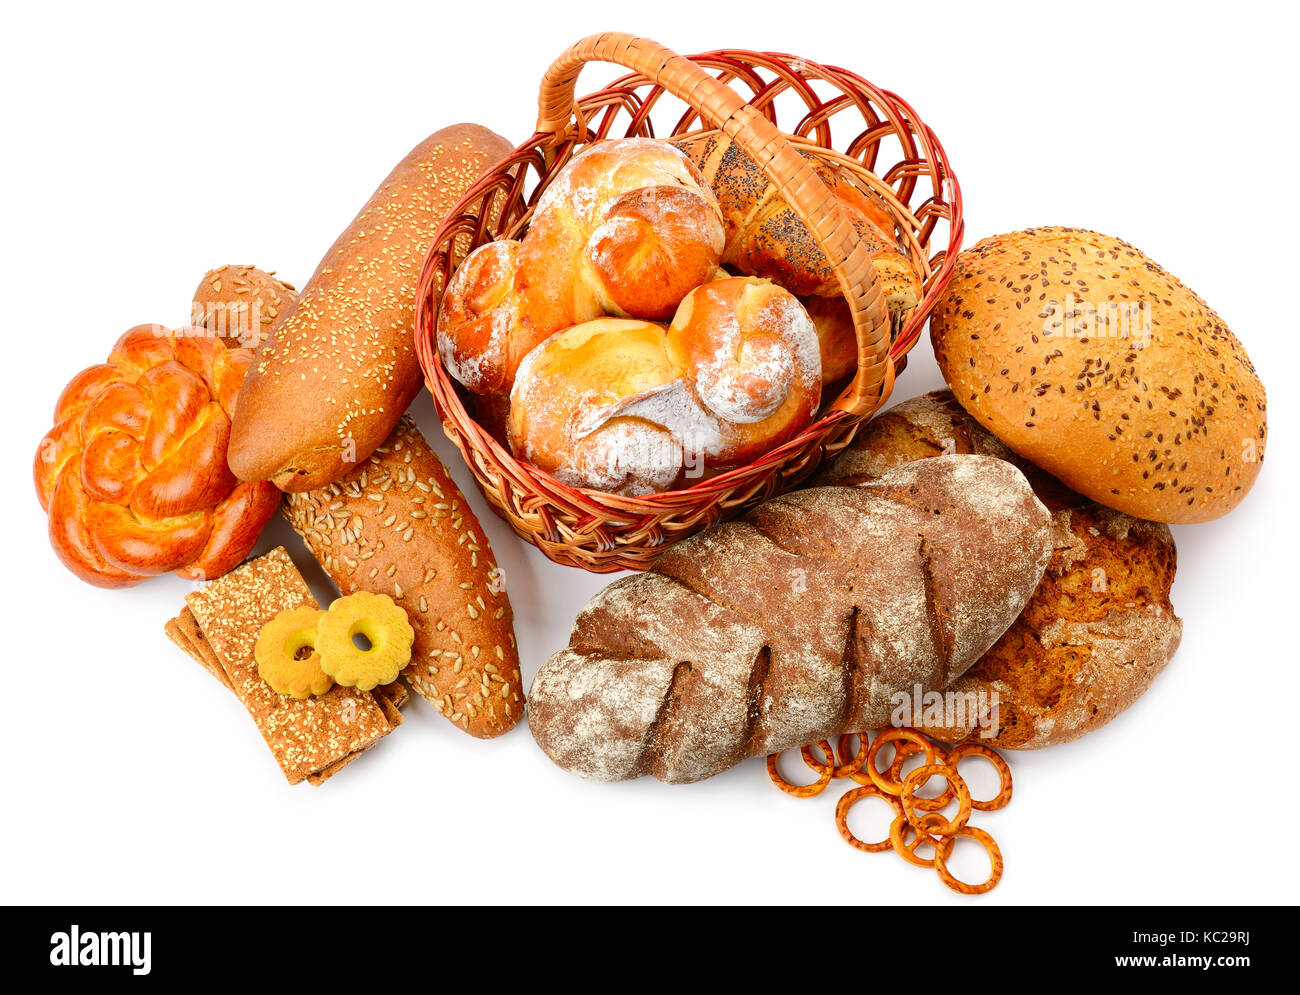 Sammlung von Brot Produkte auf weißem Hintergrund. Brot, Brötchen, Gebäck, Kekse. Stockfoto